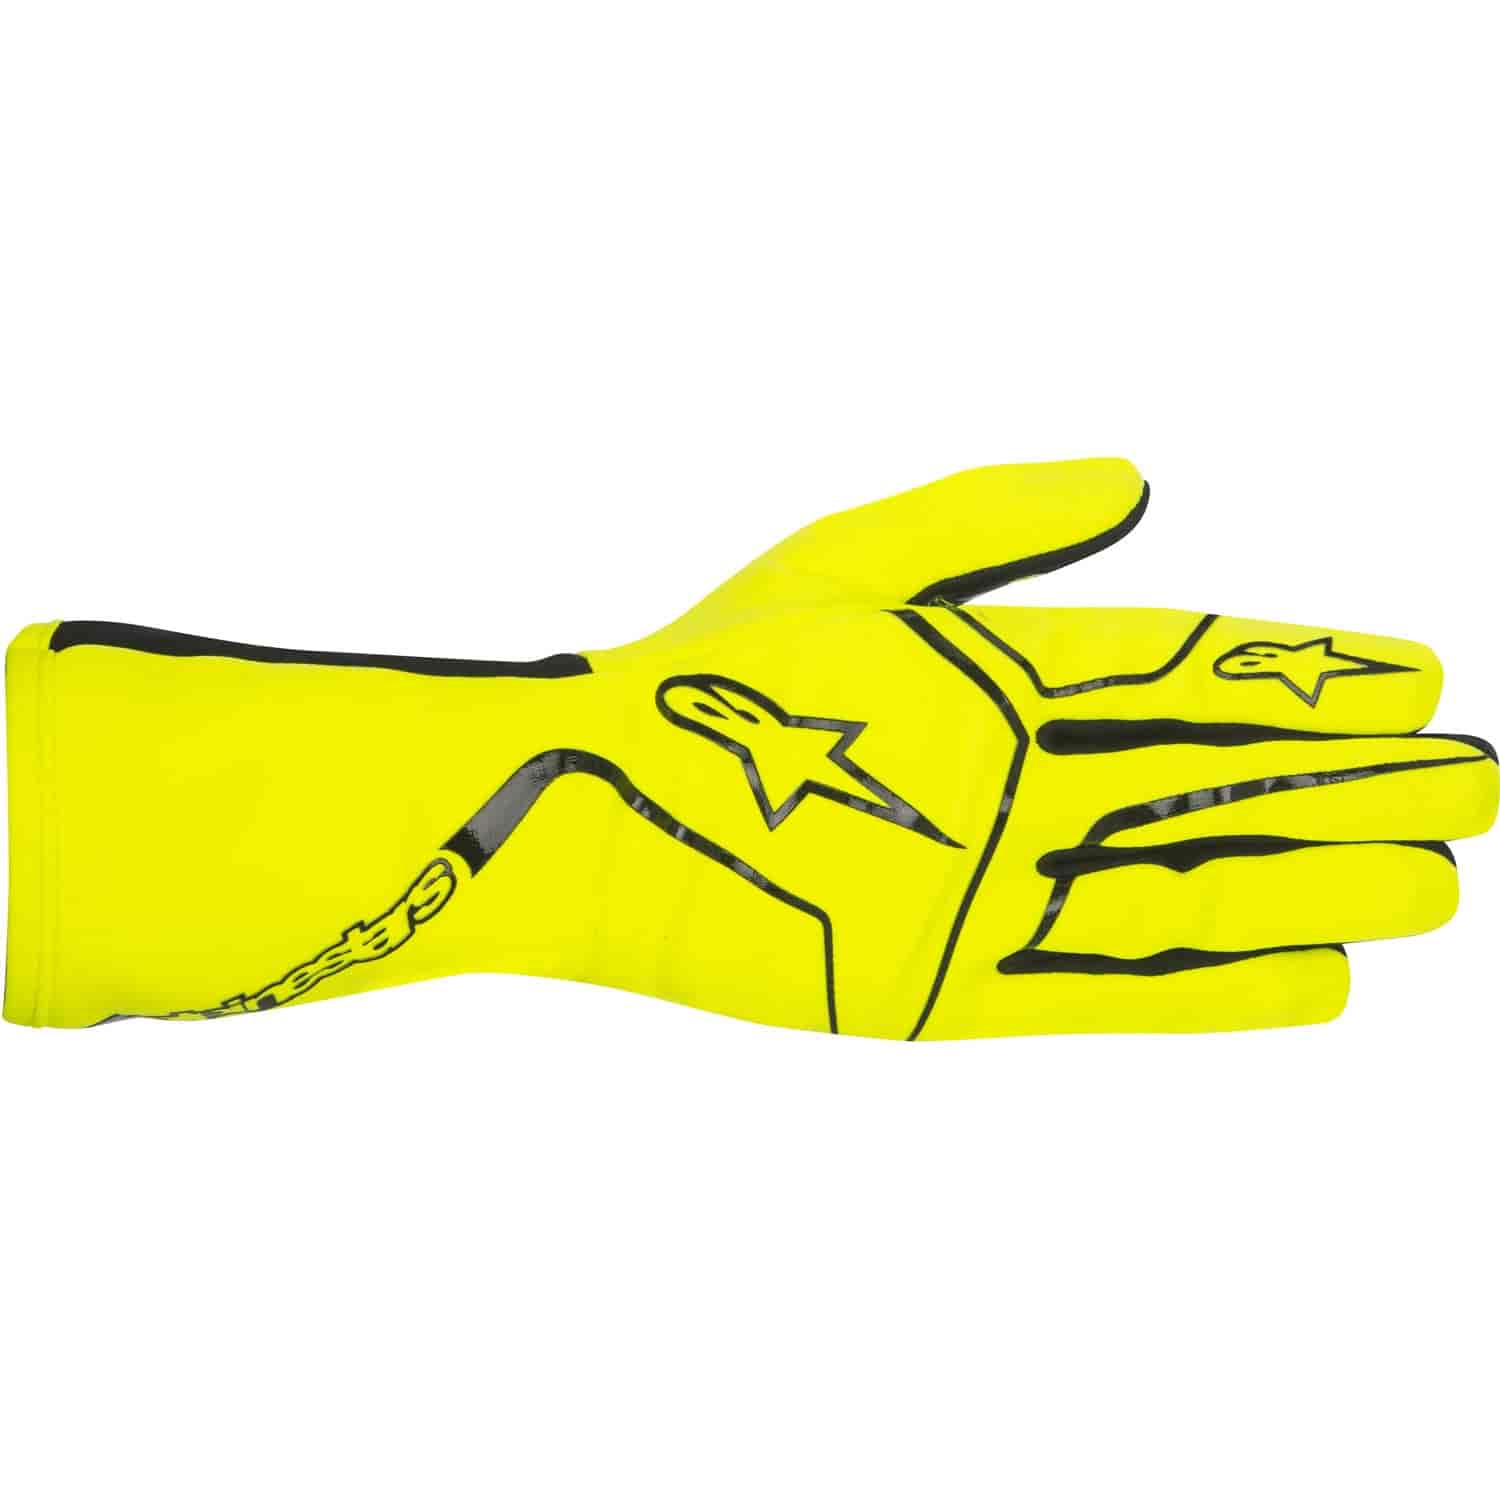 Tech 1-K Race Gloves Yellow Fluorescent